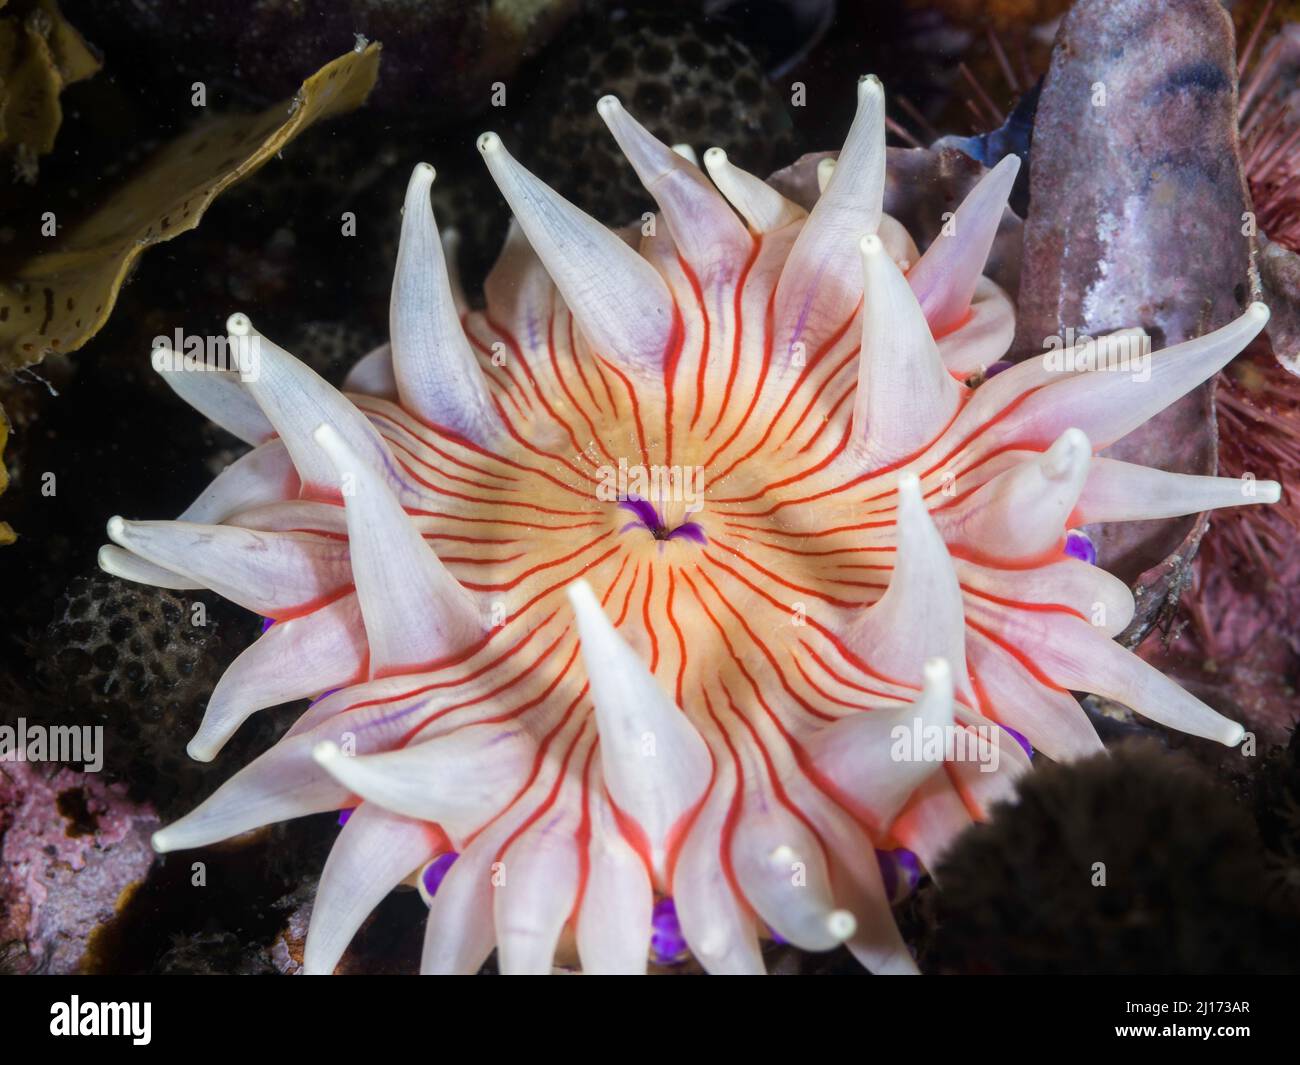 Nahaufnahme einer violett gefleckten Anemone unter Wasser (Anthopleura stephensoni) mit weißem Körper und Tentakeln und orangen Linien Stockfoto